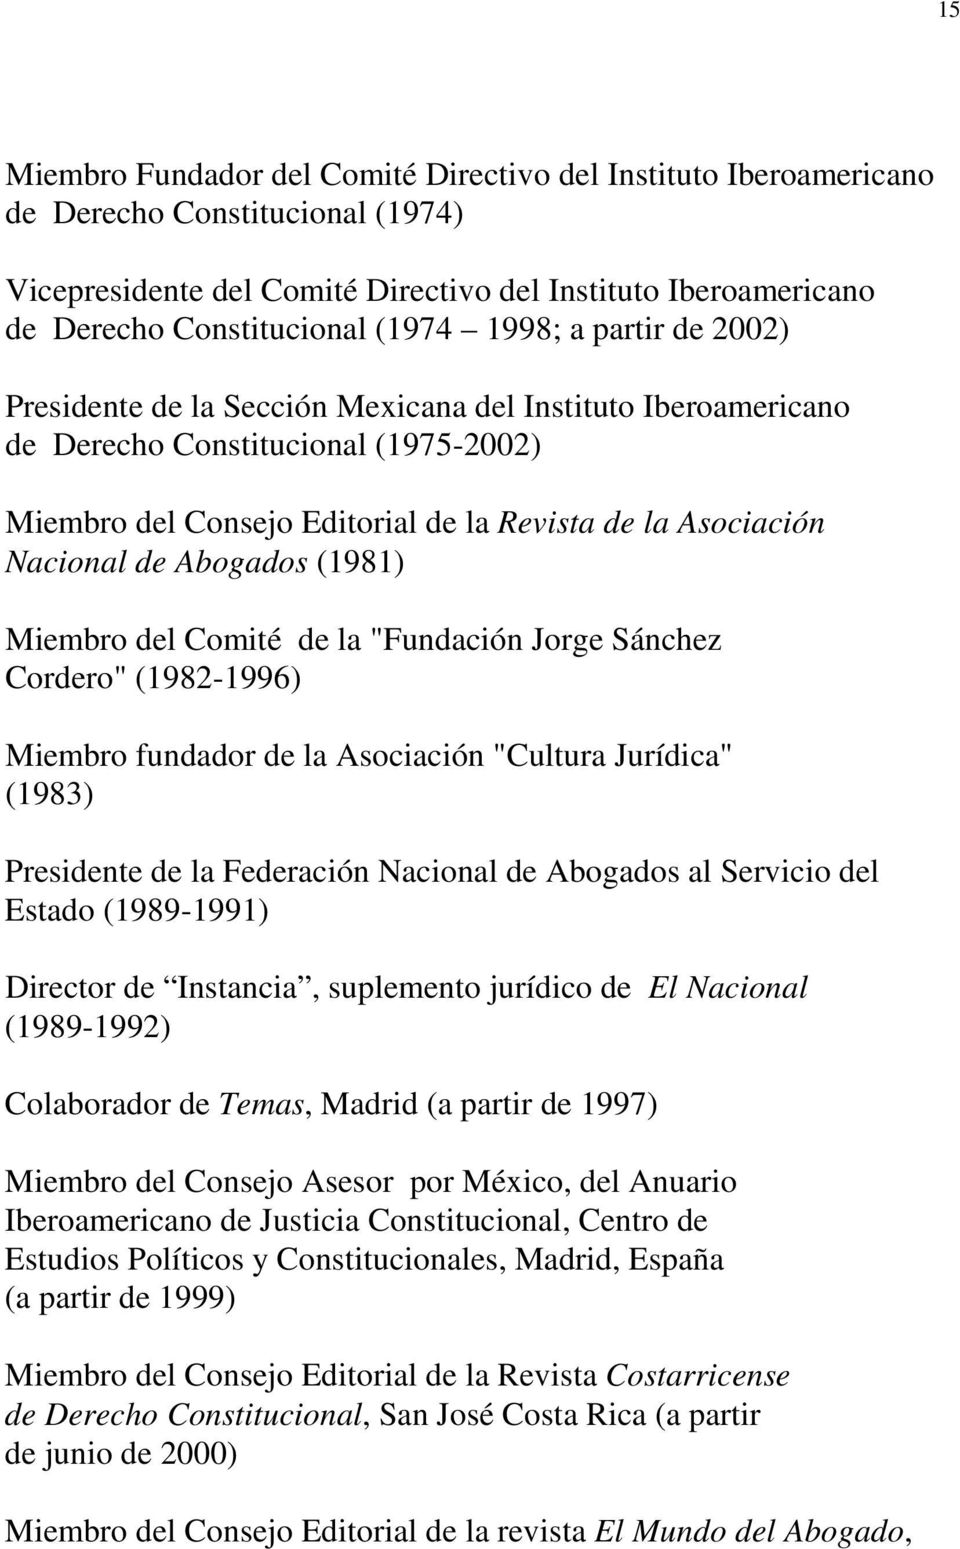 Abogados (1981) Miembro del Comité de la "Fundación Jorge Sánchez Cordero" (1982-1996) Miembro fundador de la Asociación "Cultura Jurídica" (1983) Presidente de la Federación Nacional de Abogados al